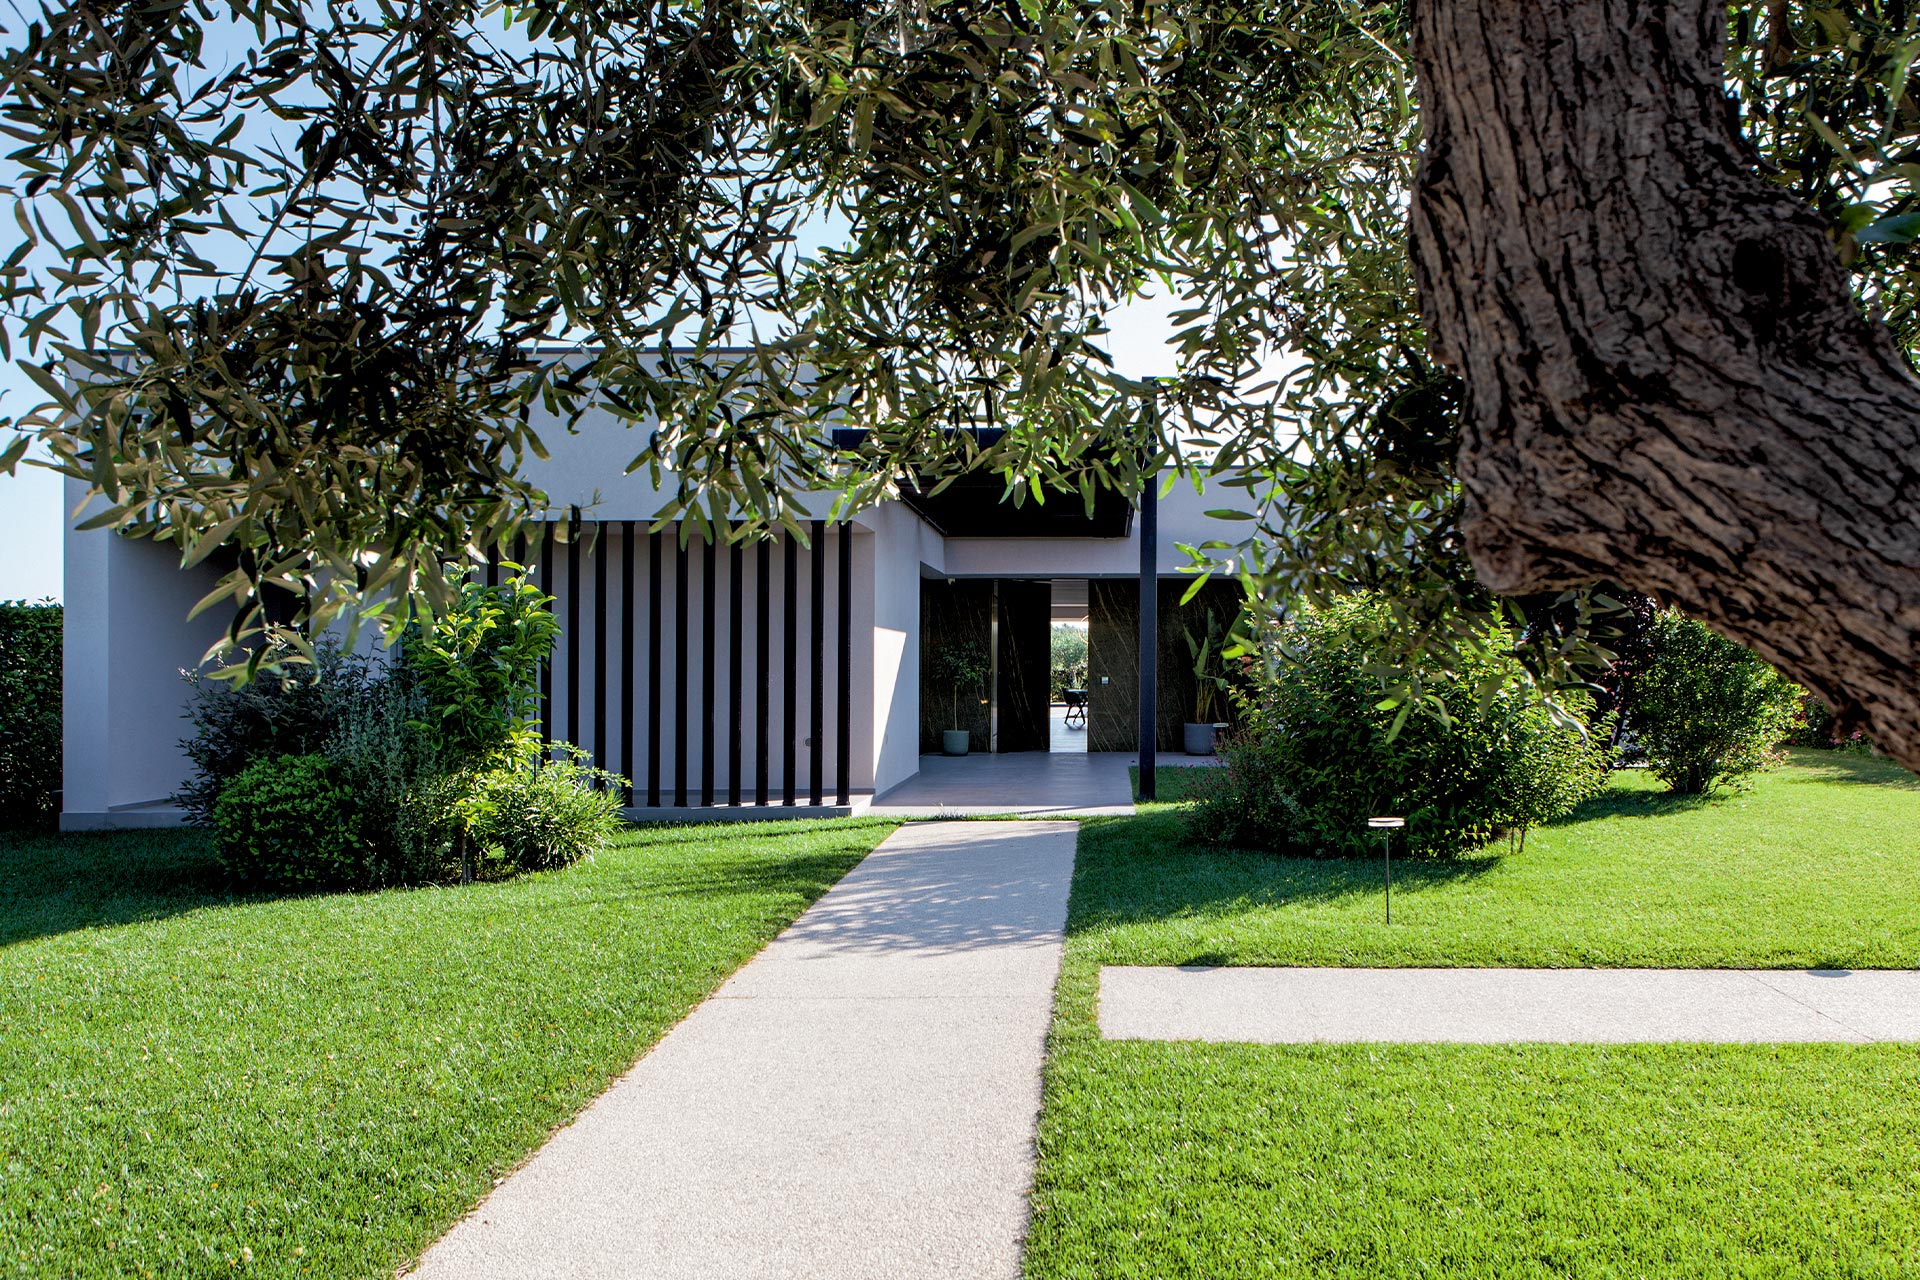 Progetto con Synua Wall System a Ragusa, Casa dell’Ulivo – Villa privata - Oikos